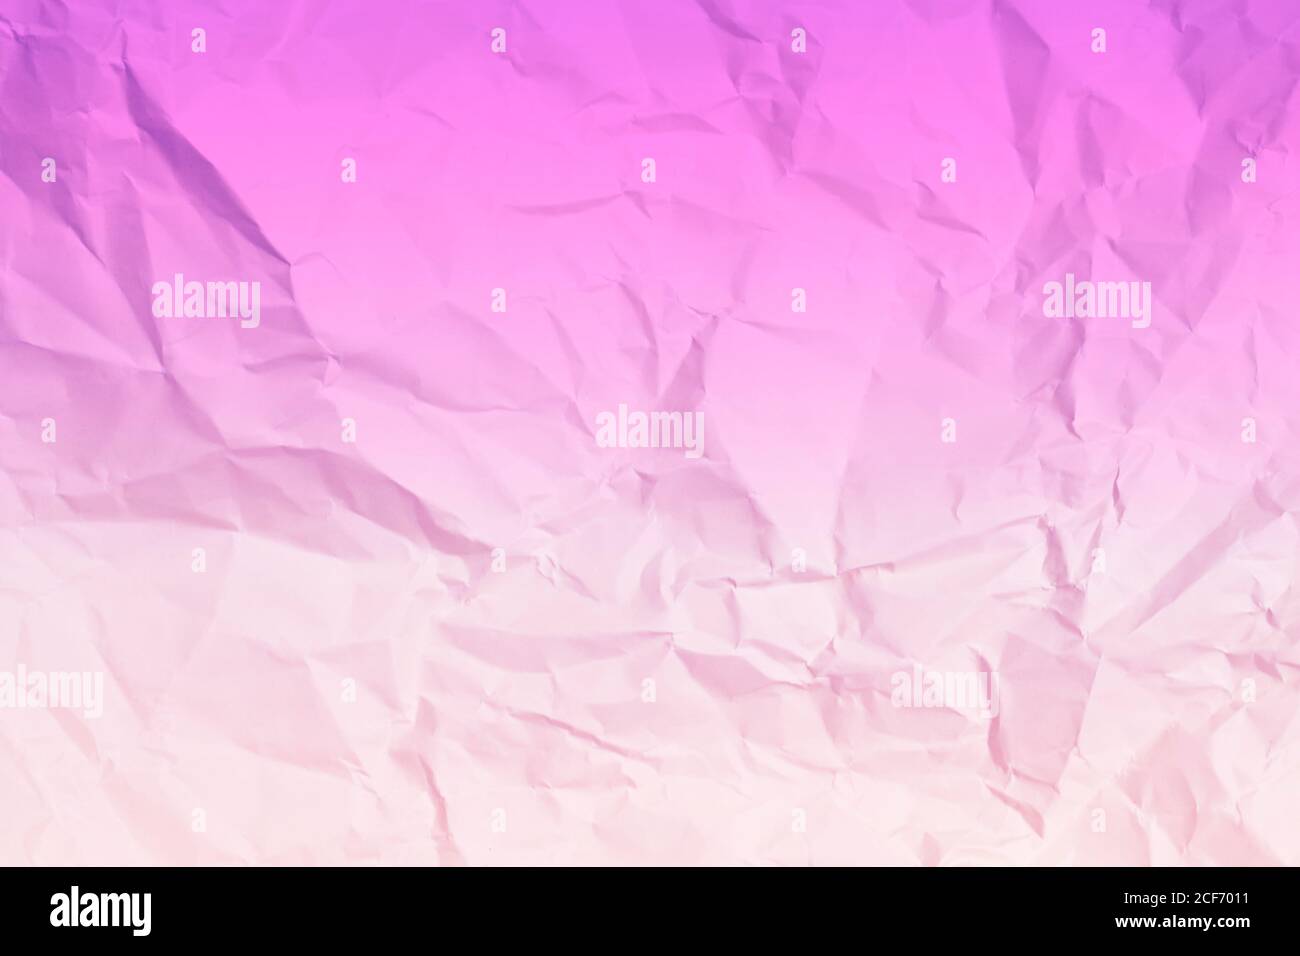 sfondo di carta rosa con sbriciolati, texture per screensaver di web design. Modello per vari scopi o creazione di confezioni. Foto Stock